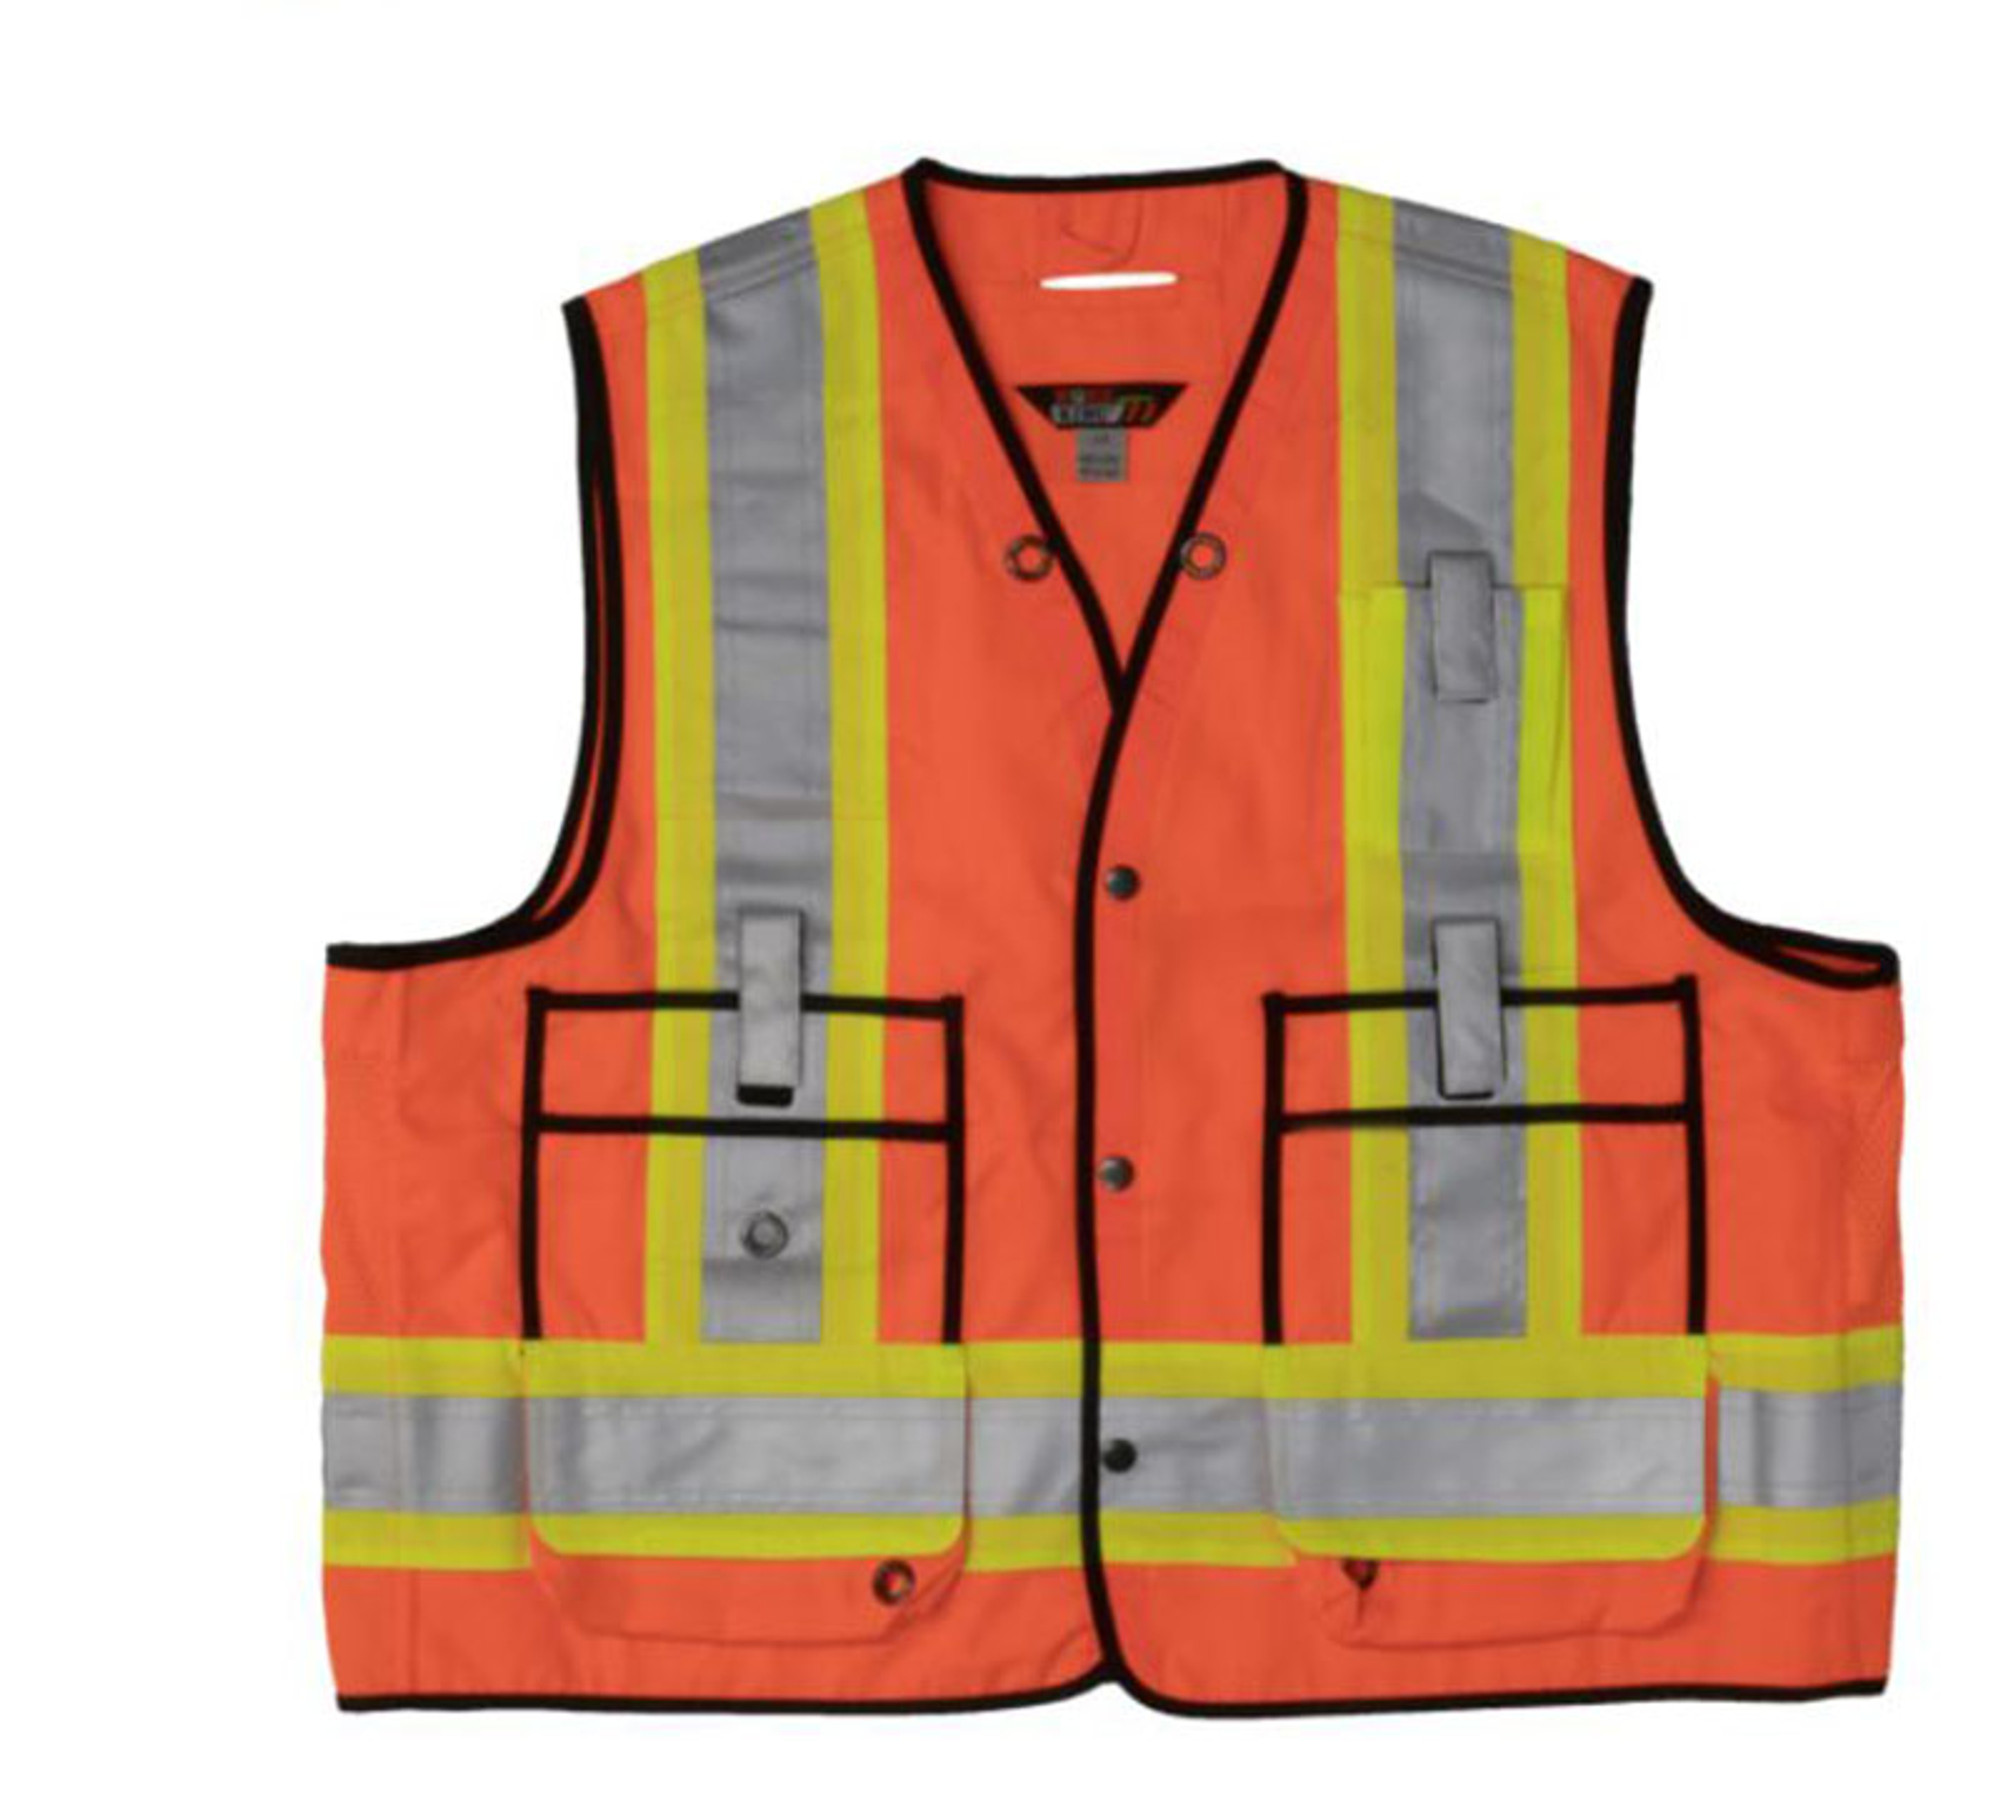 Surveyor Safety Vest (Fluorescent Orange) - 2 Pack